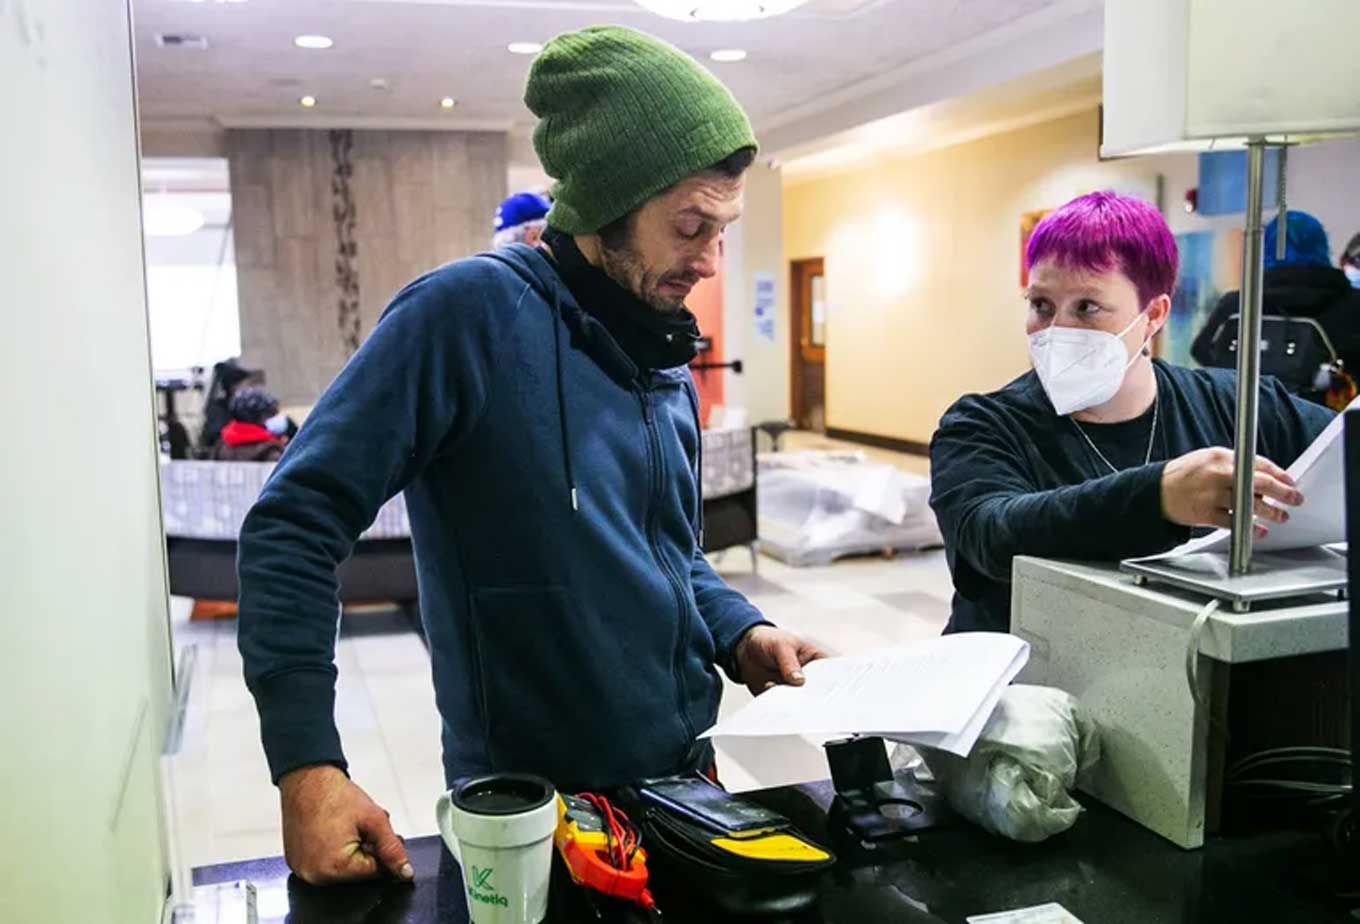 Gonzo controleert papierwerk dat in een van zijn handen wordt gehouden terwijl een hotelmedewerker hem aankijkt.